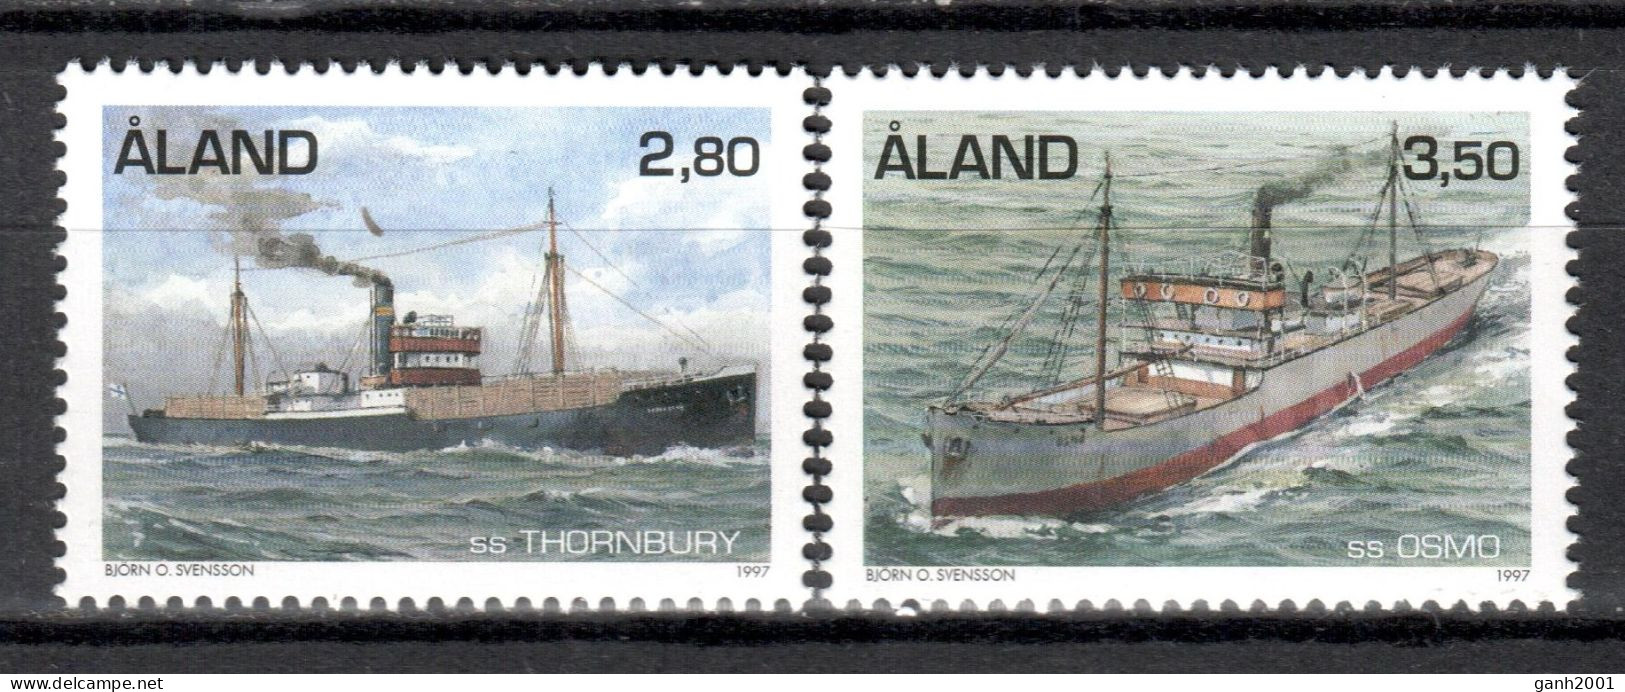 Aland 1997 / Ships Boats MNH Bateaux Schiffe Barcos / Mo33  38-3 - Barcos